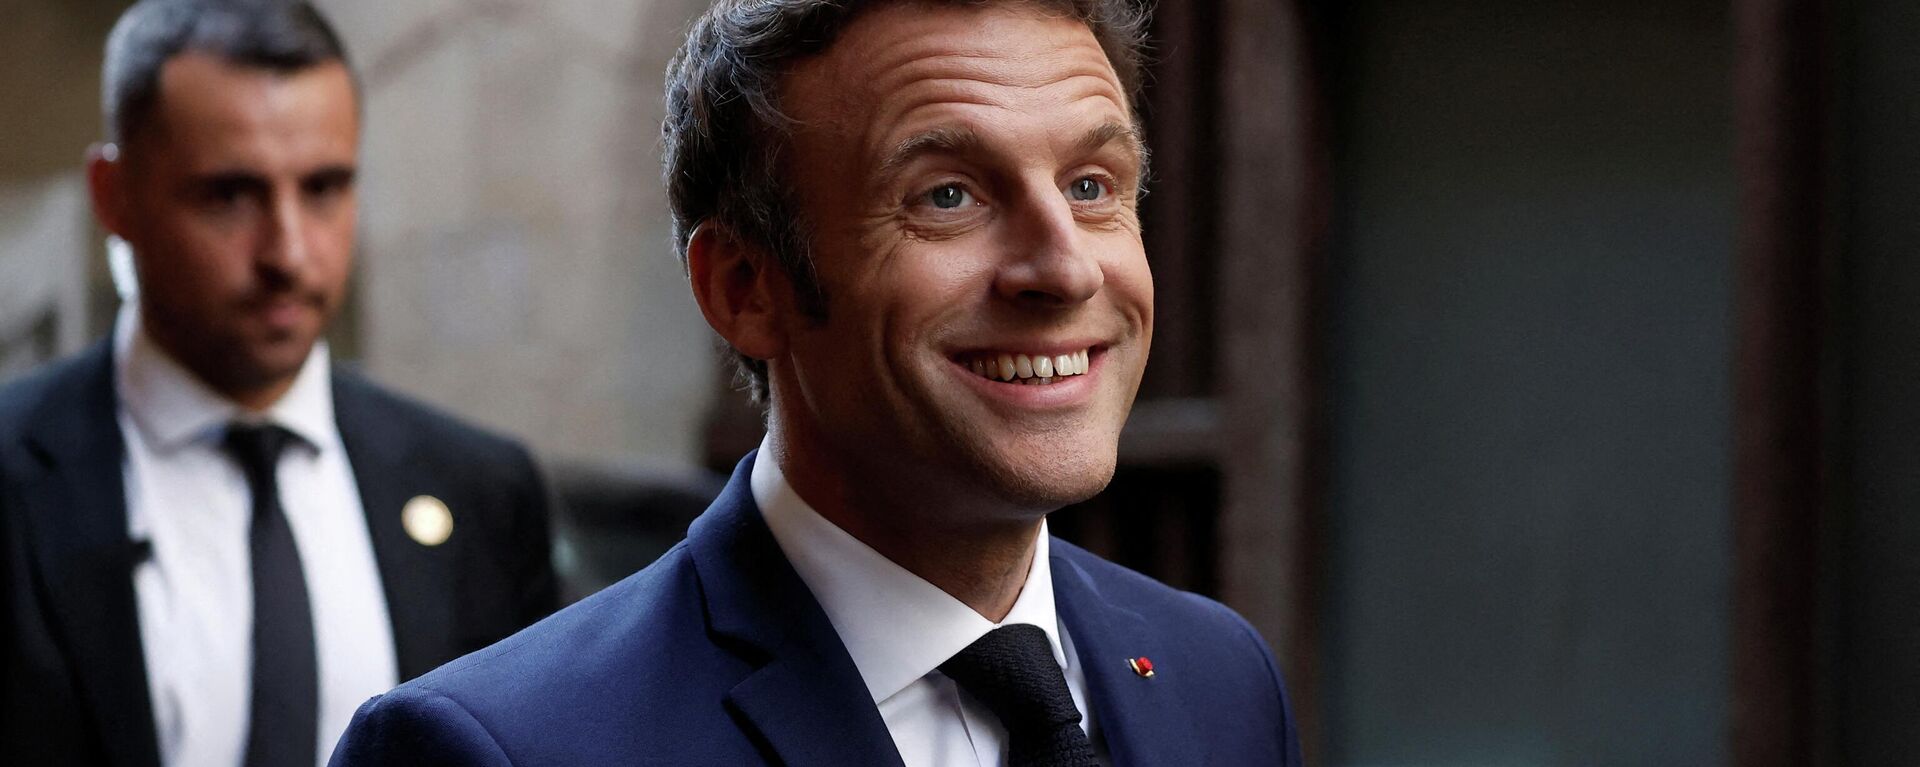 O presidente francês Emmanuel Macron chega para realizar um comício no último dia de campanha, em Figeac, sul da França, em 22 de abril de 2022. - Sputnik Brasil, 1920, 25.04.2022